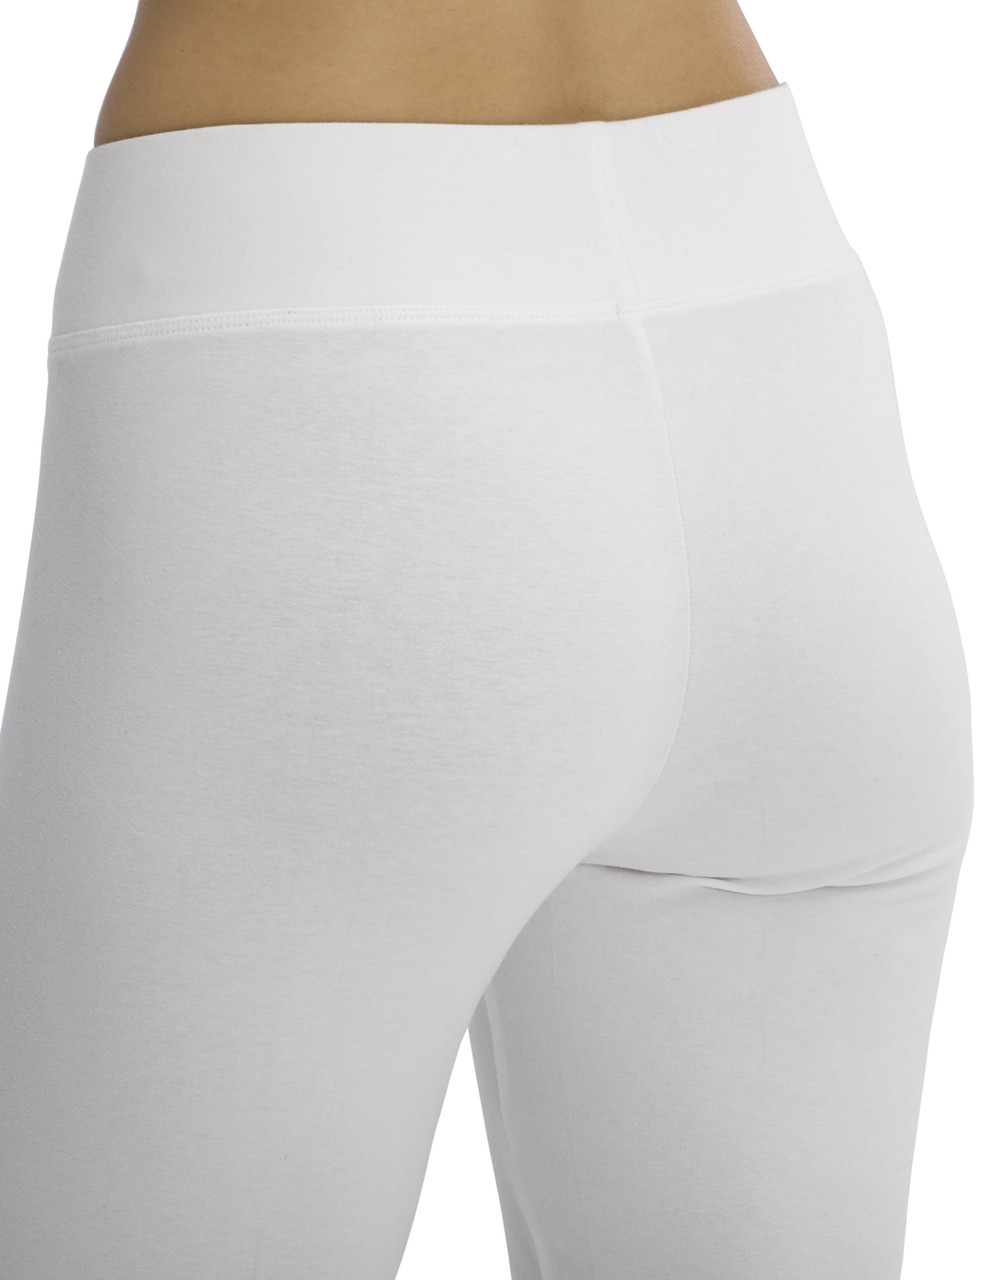 Buy online White Cotton Capri Legging from Capris & Leggings for